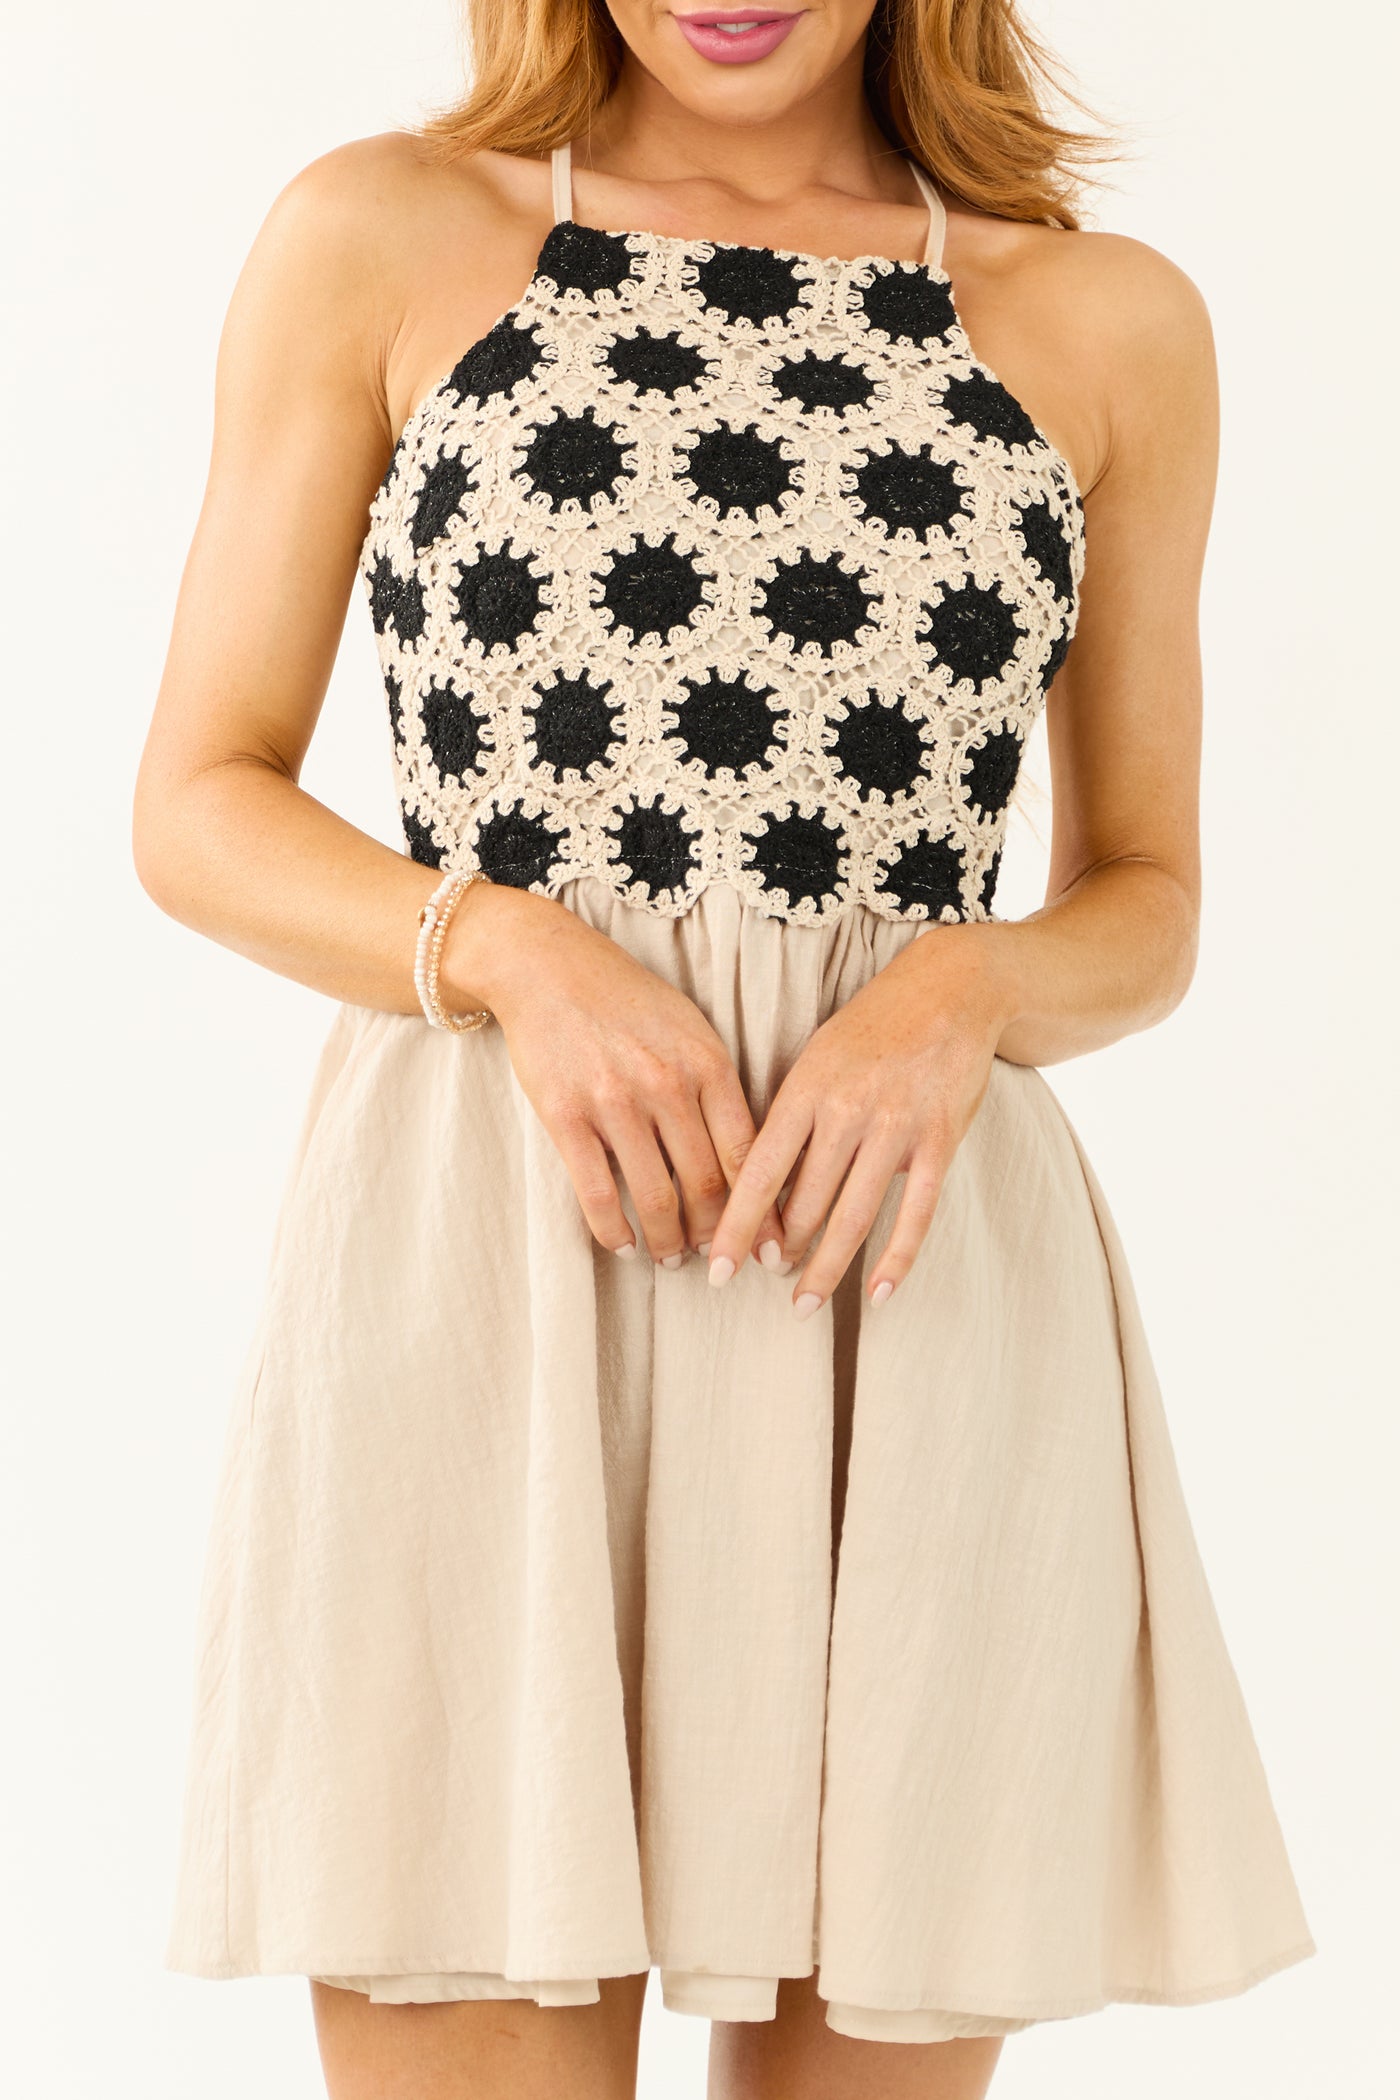 Almond Crochet Top Short Dress